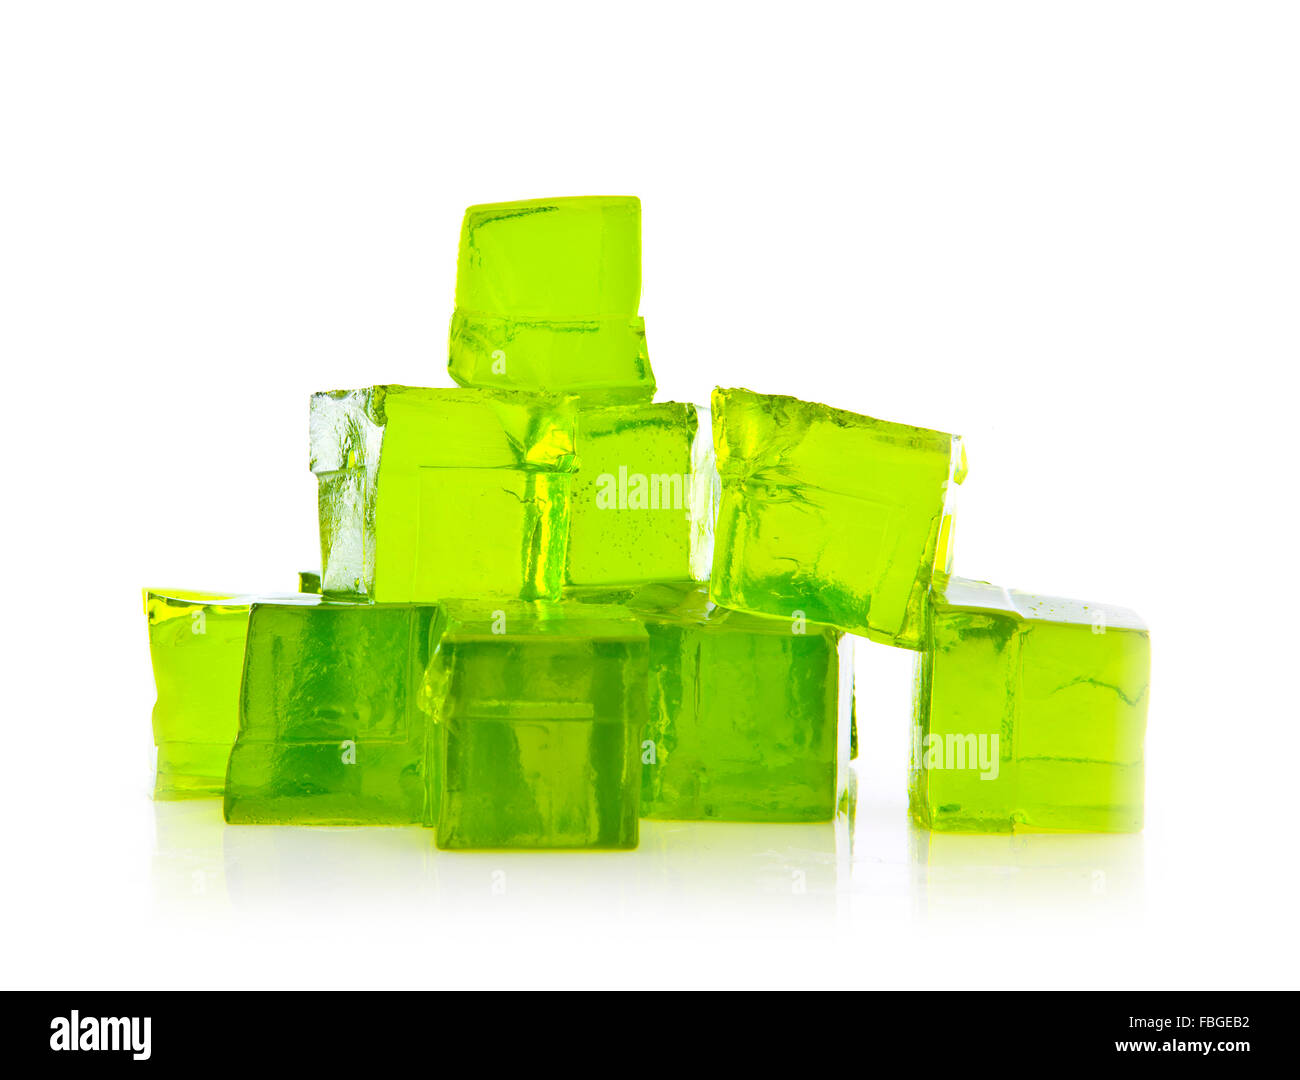 Les Cubes de gelée de citron vert sur un fond blanc Banque D'Images